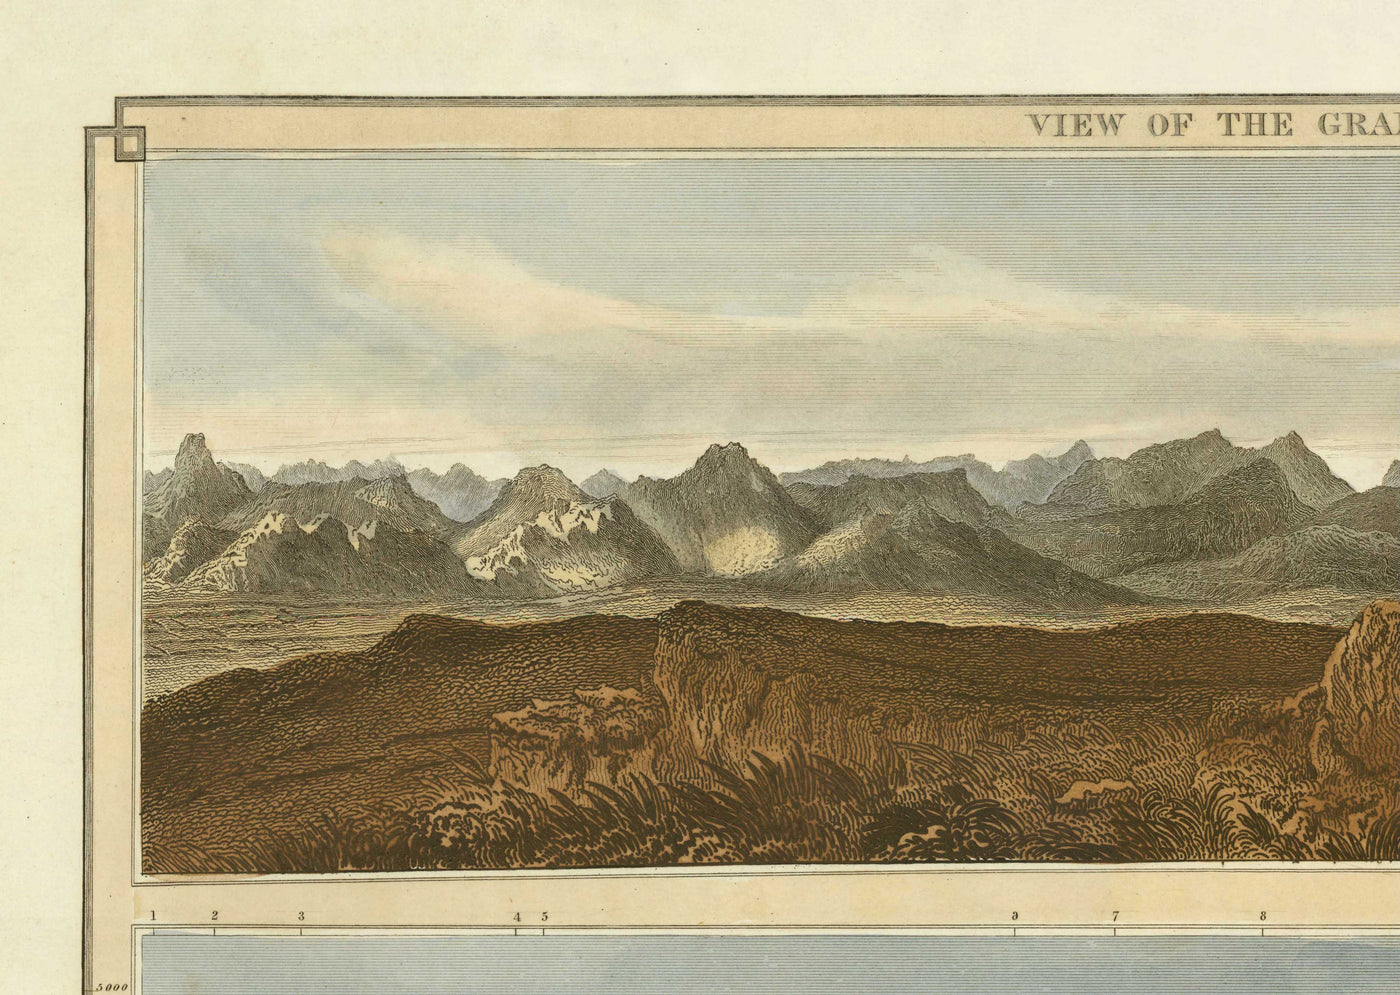 Alte Karte der schottischen Berge im Jahr 1832 von John Thomson - Die Highlands, Ben Nevis, Loch na Garr, Cairngorms, Ben Macdui, Ben Venue